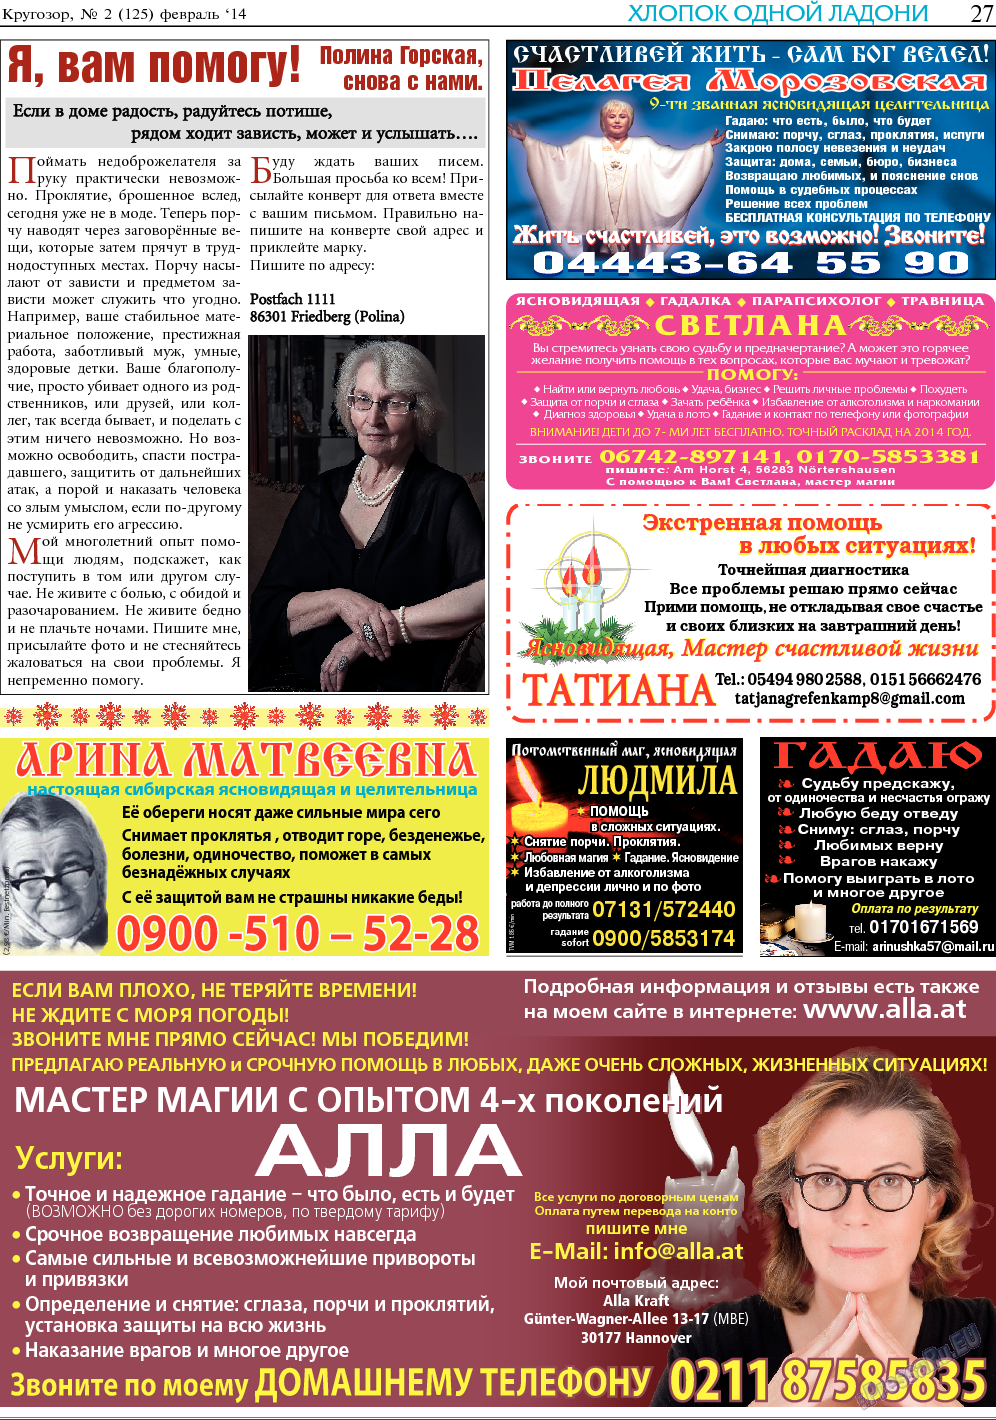 Кругозор, газета. 2014 №2 стр.27